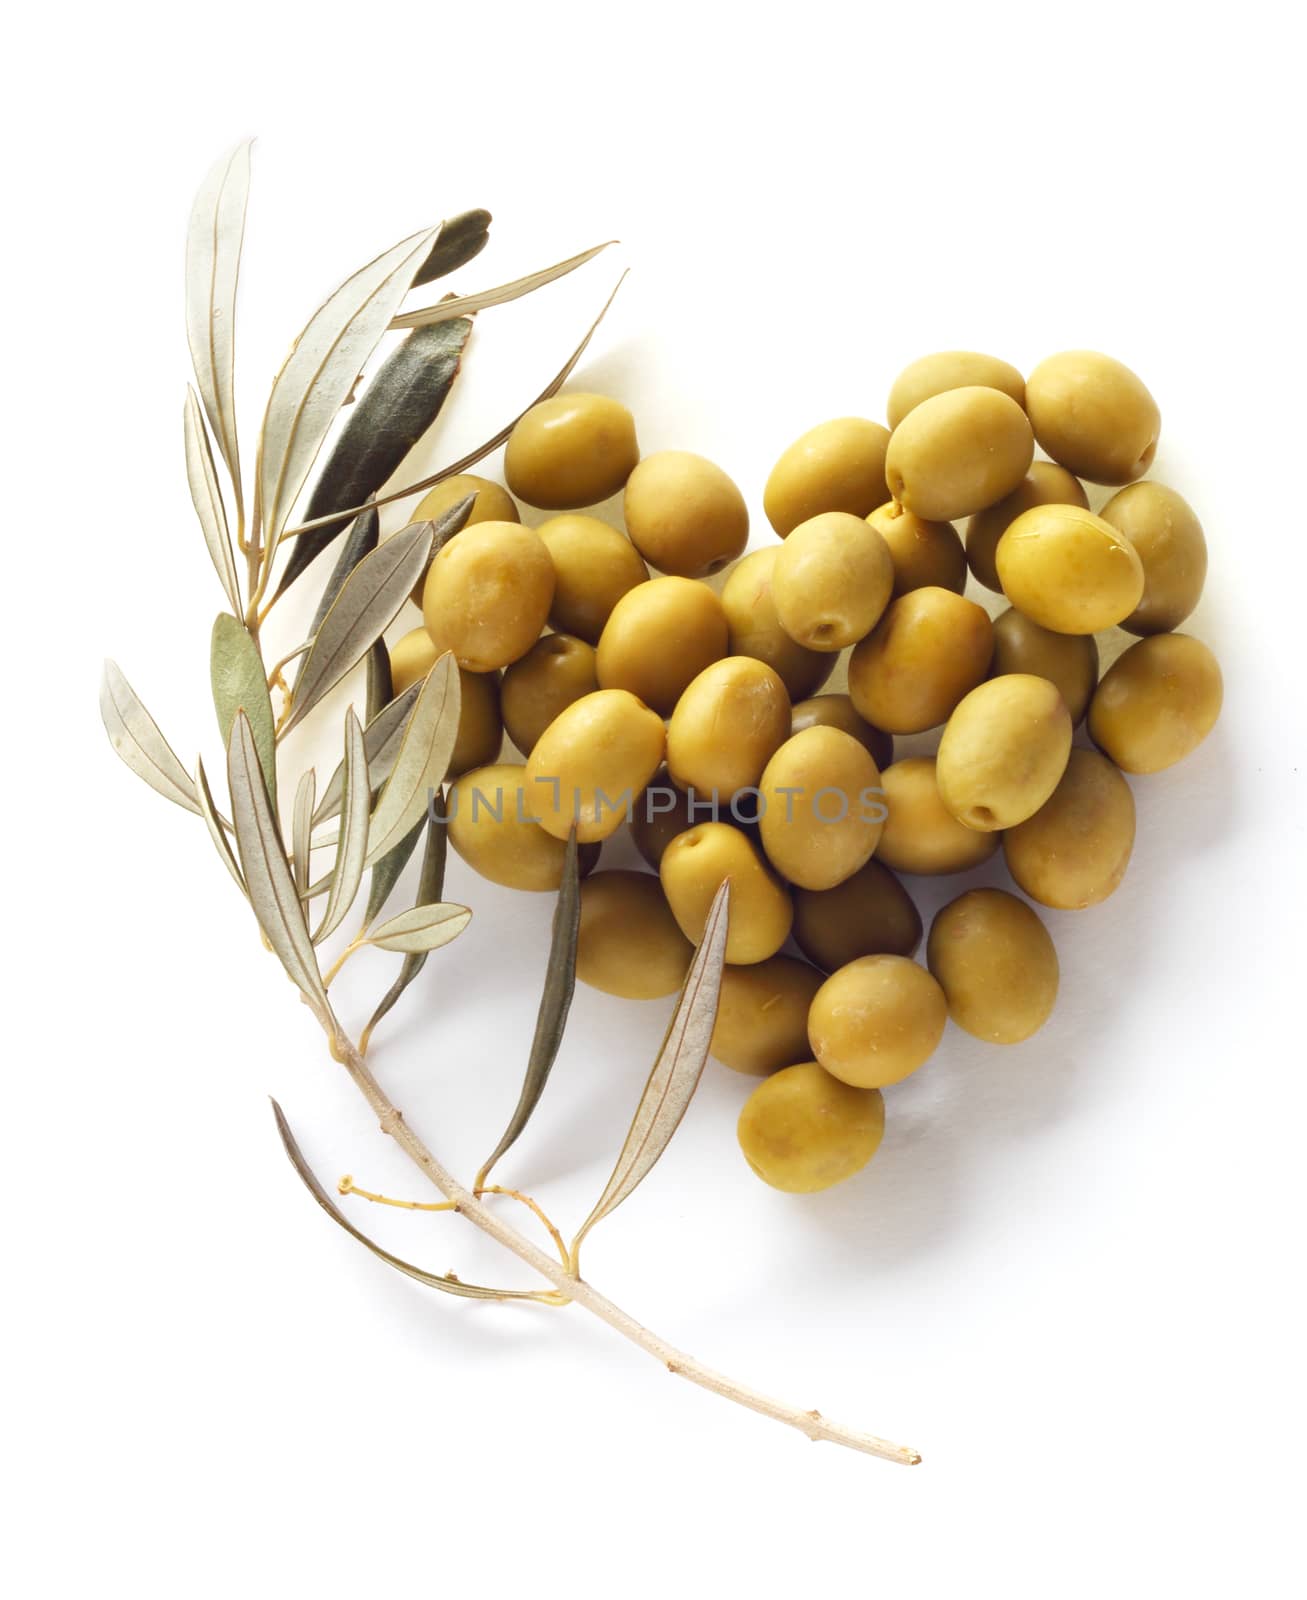 Olives in heart shape by destillat